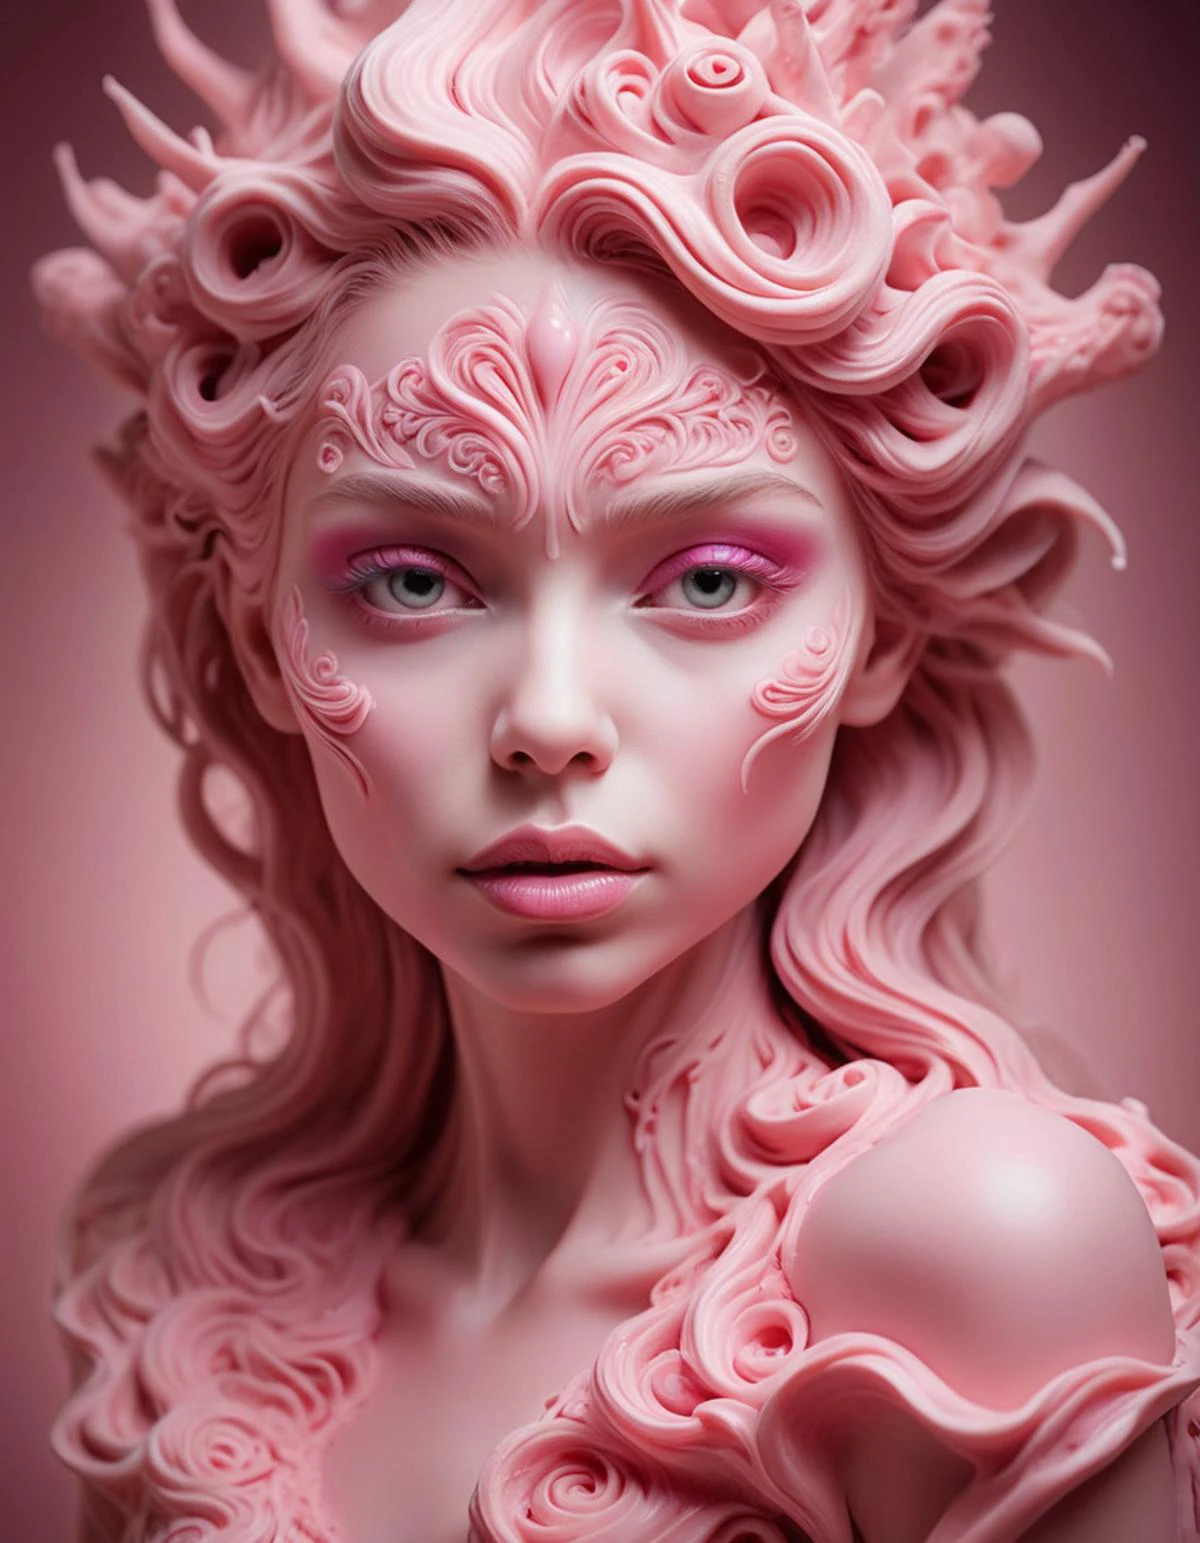 RAW写真, ピンクのアイシングで作られた精巧な女性の顔. ファンタジースタイル. ファンタジーな夢のようなアート. 素朴な. 